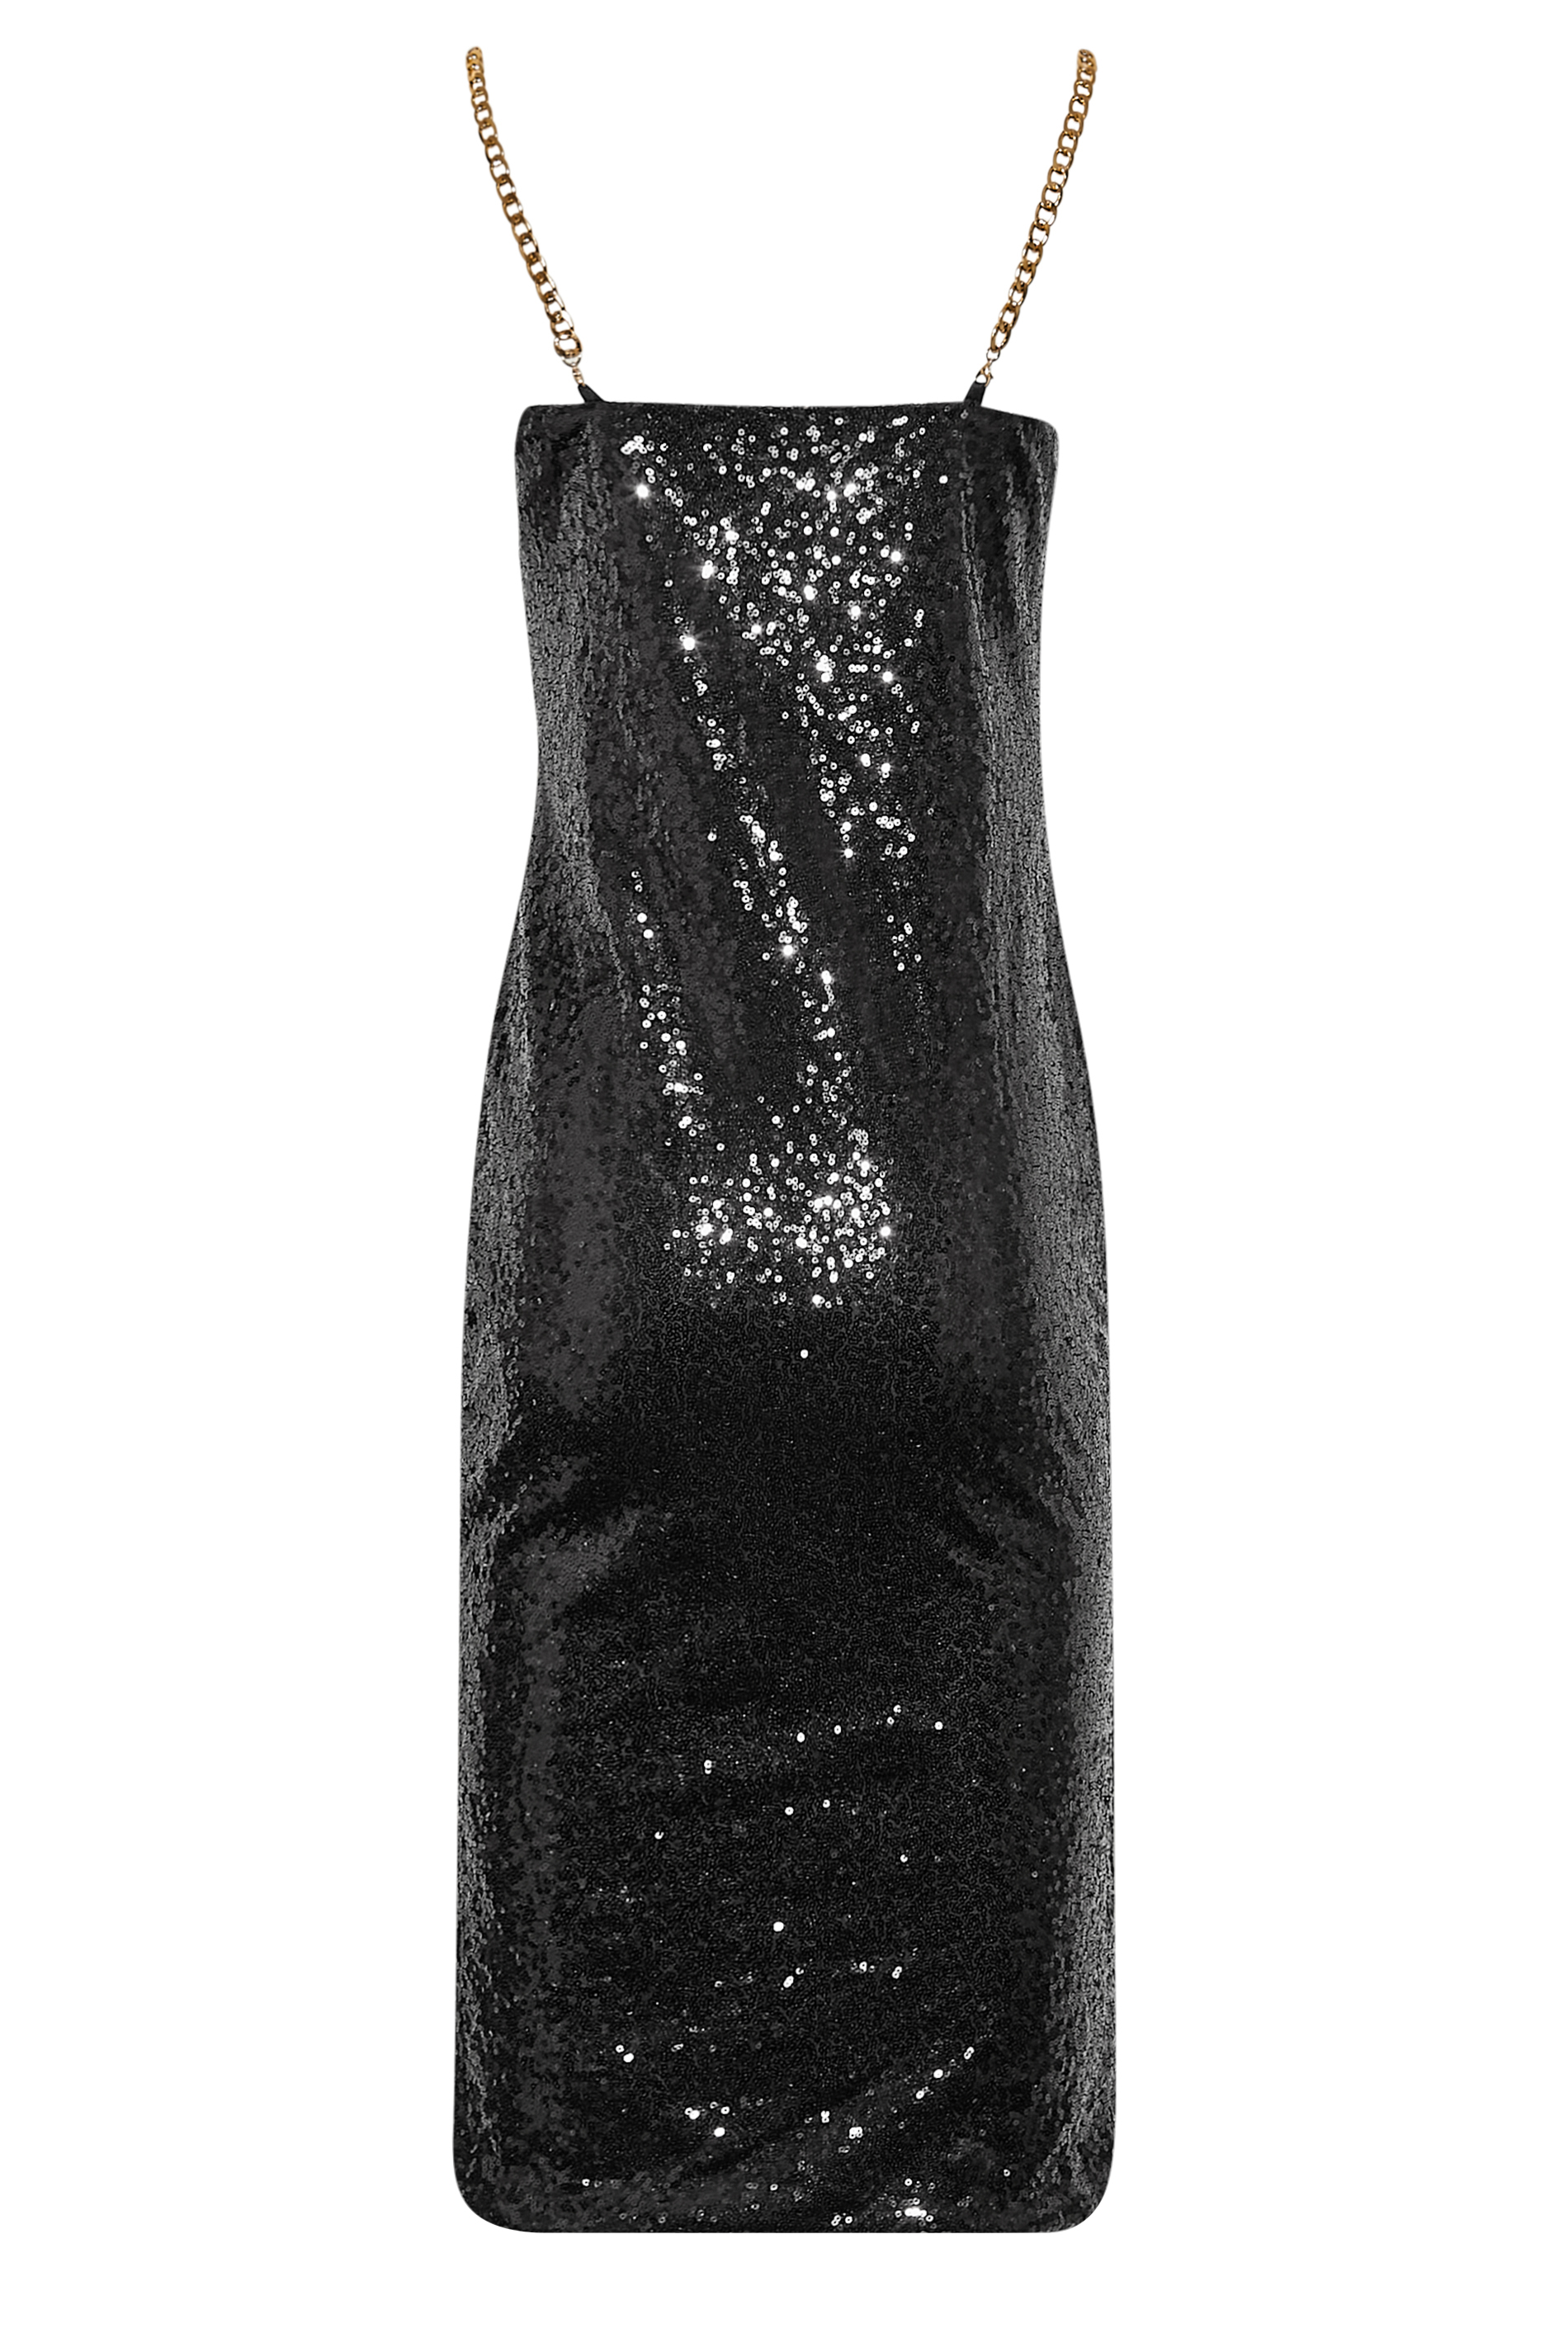 LTS Tall Women's Black Sequin Chain Strap Mini Dress | Long Tall Sally 3